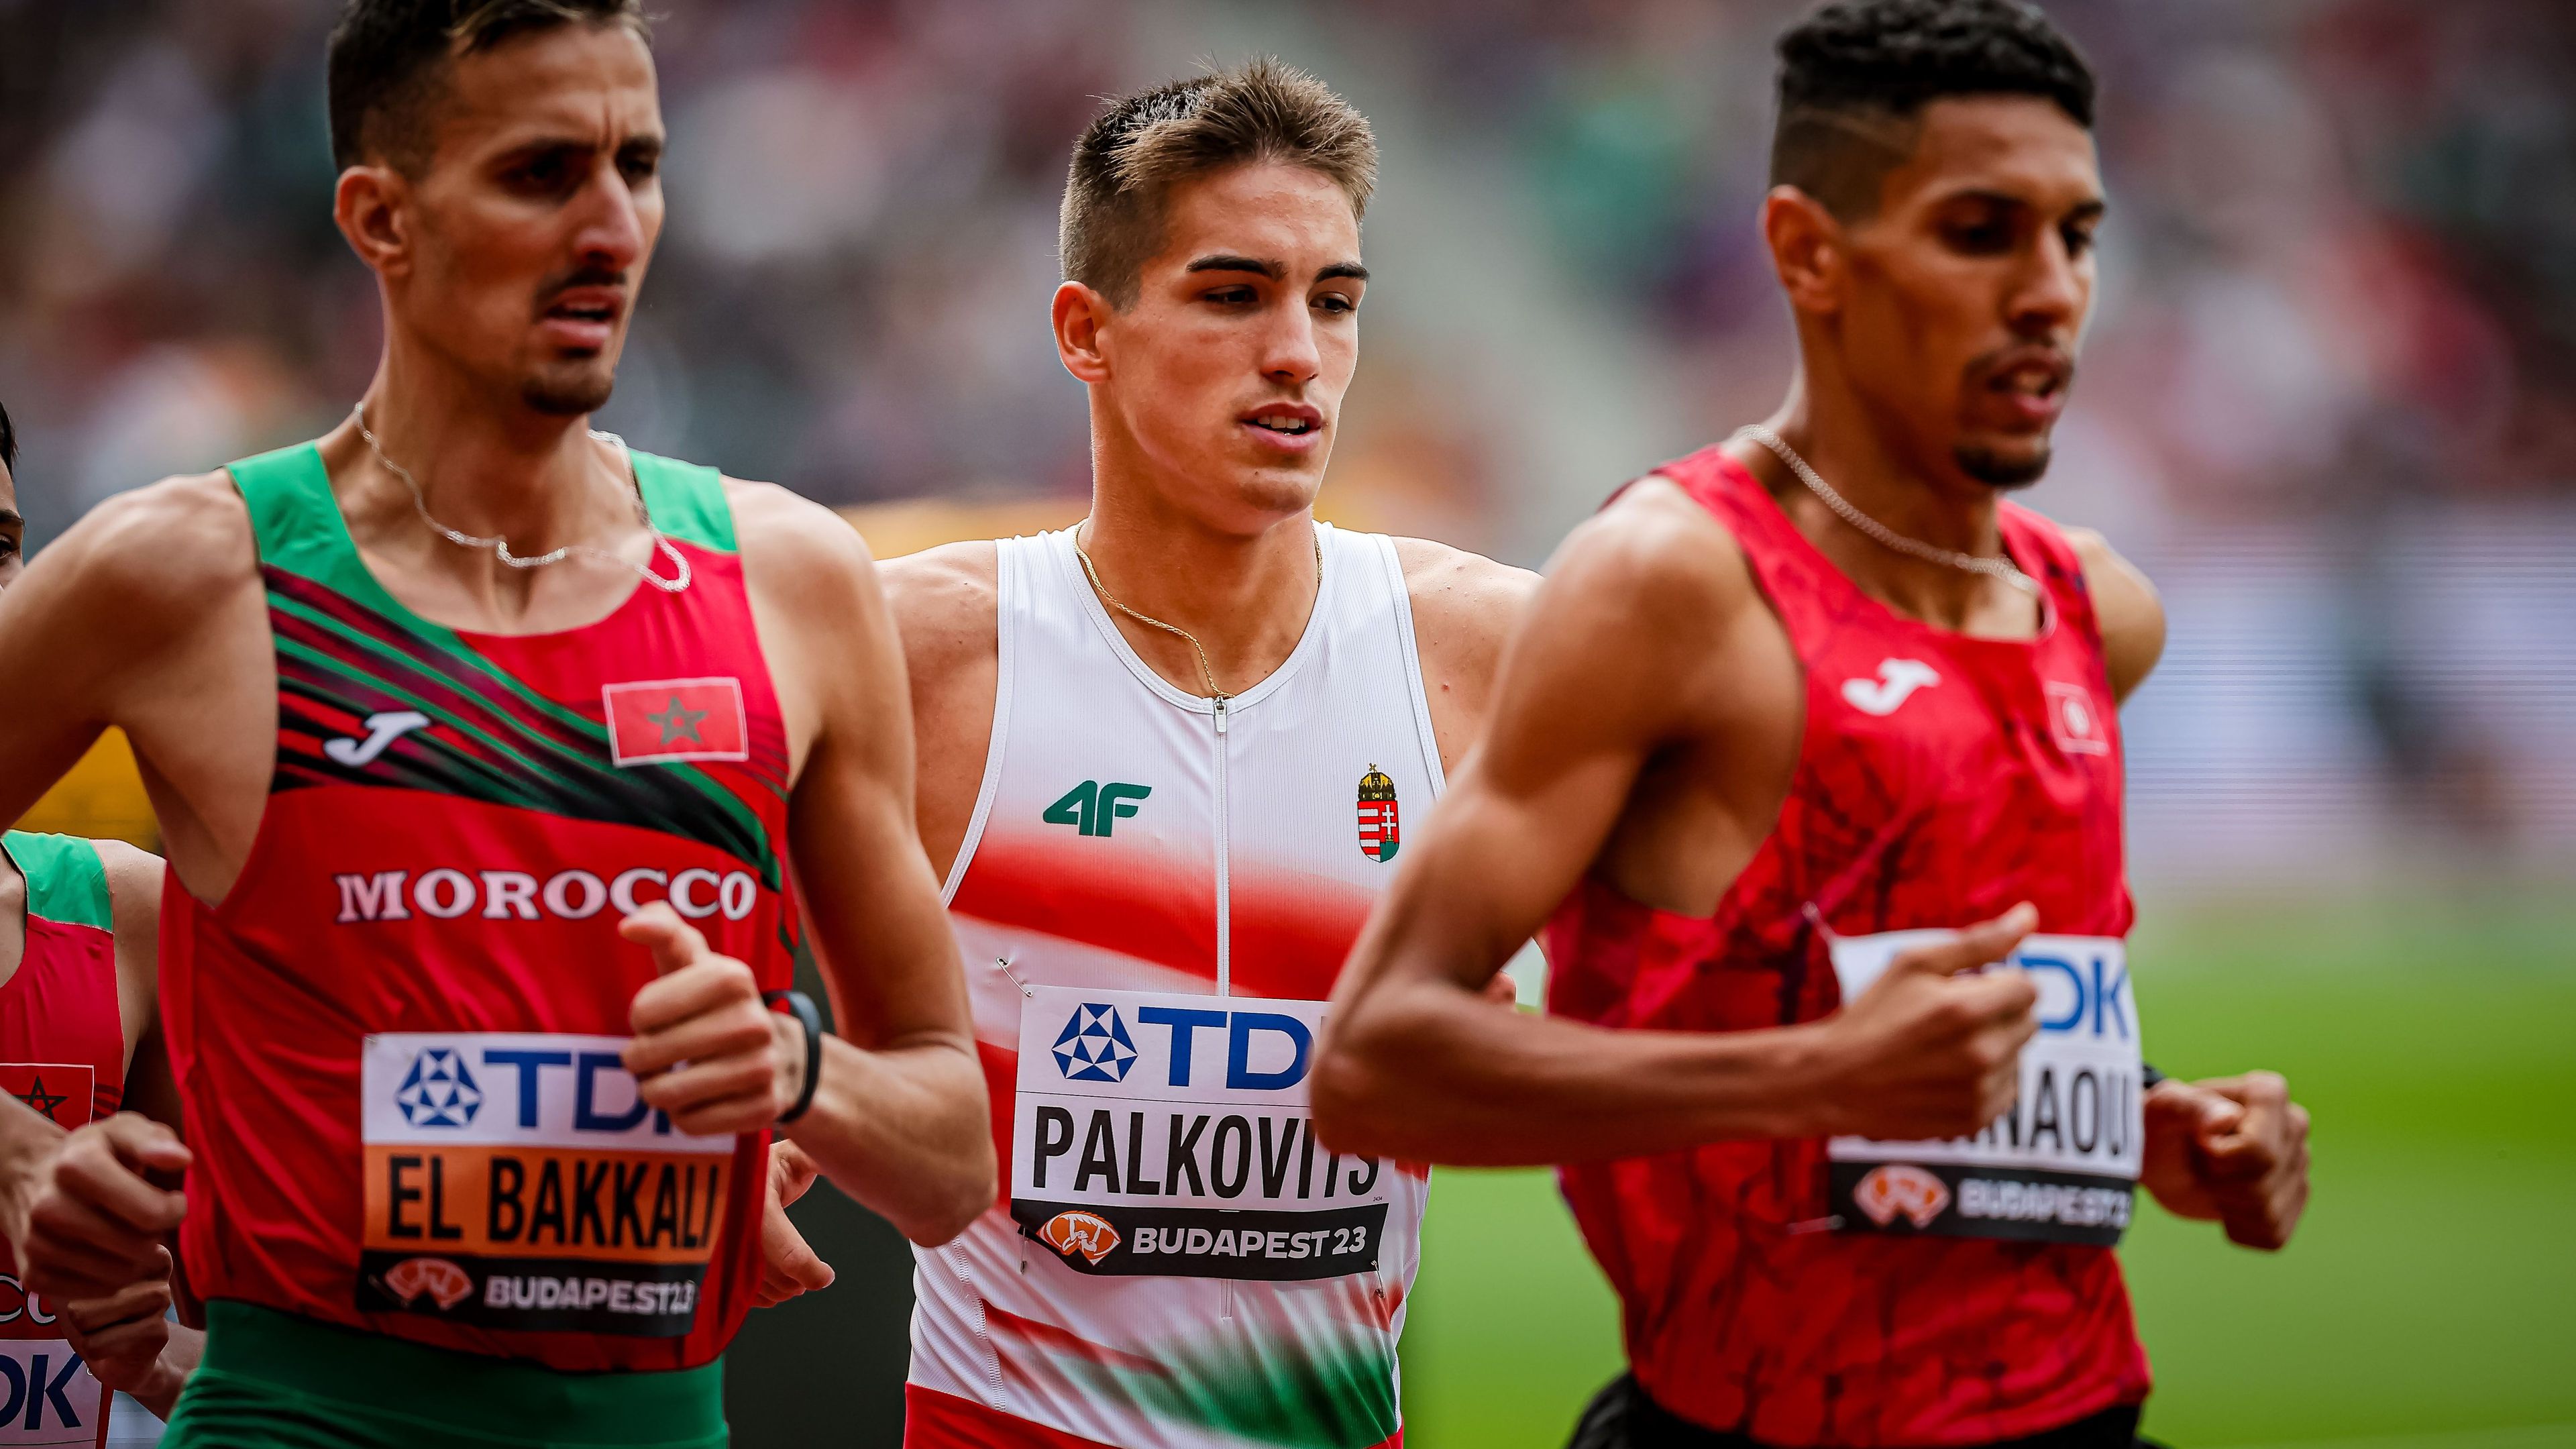 A korosztályos Európa-bajnok magyar sportoló megcélozza a párizsi olimpiát